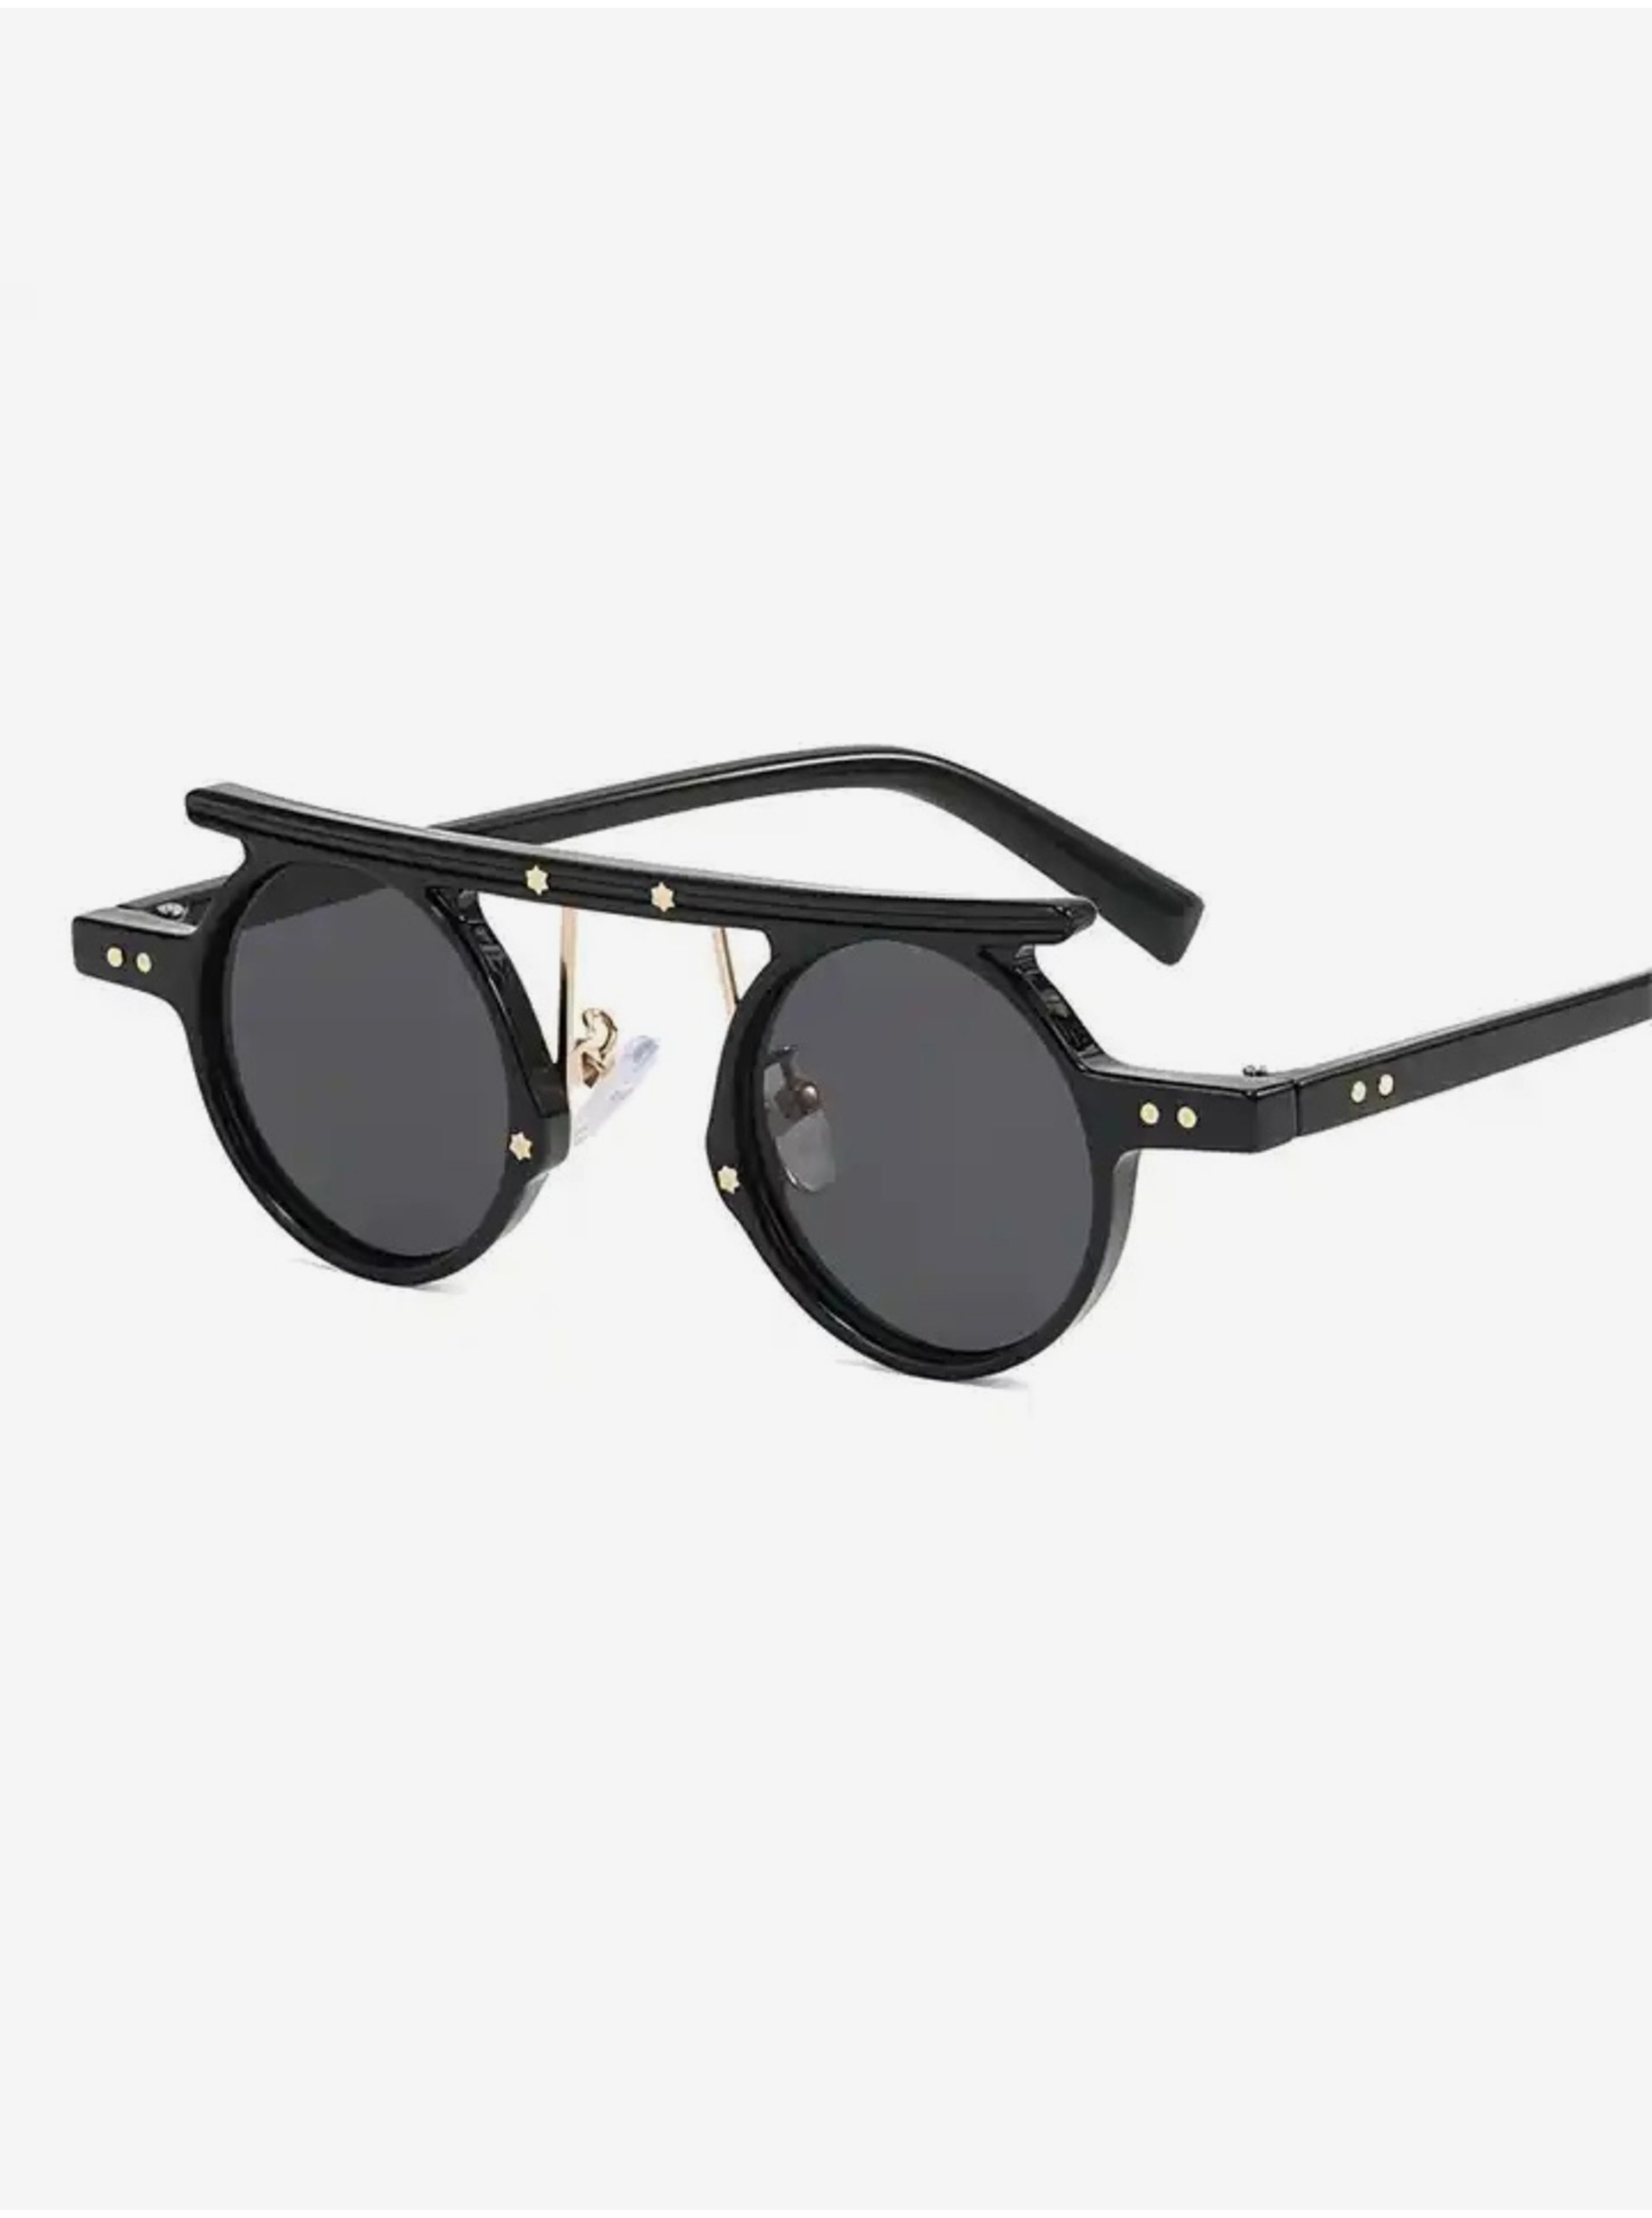 E-shop Černé unisex sluneční brýle VeyRey Steampunk Punnyostion